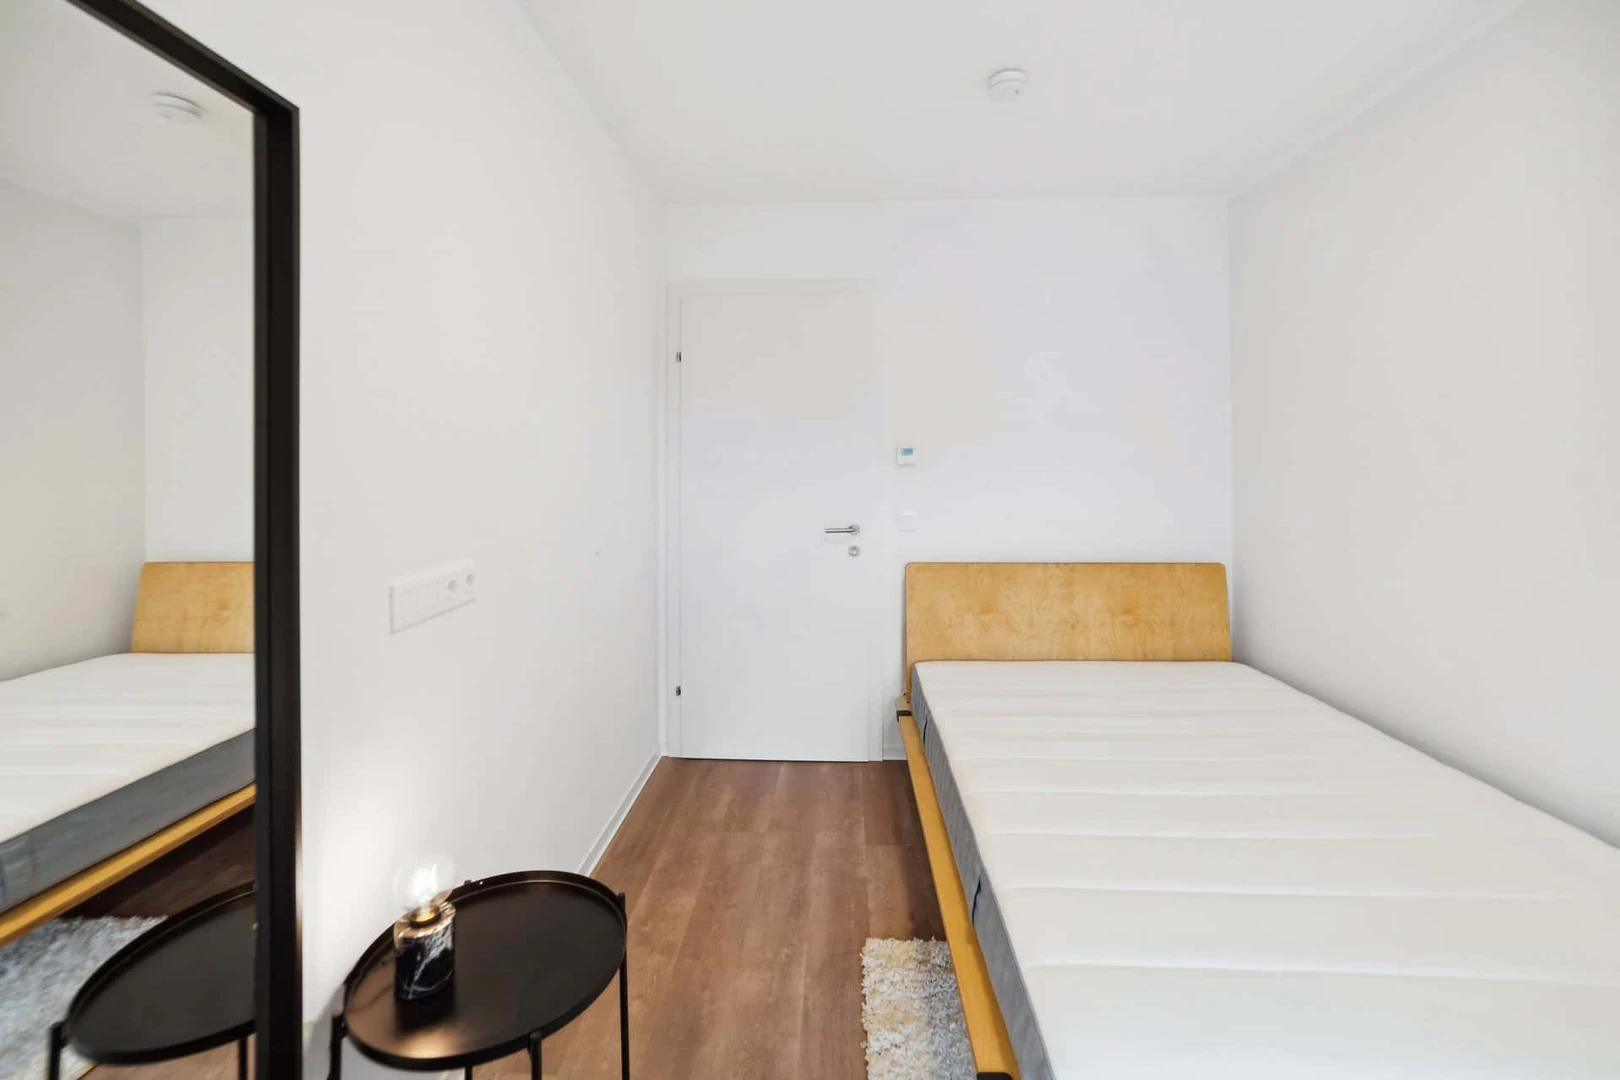 Zimmer mit Doppelbett zu vermieten Graz